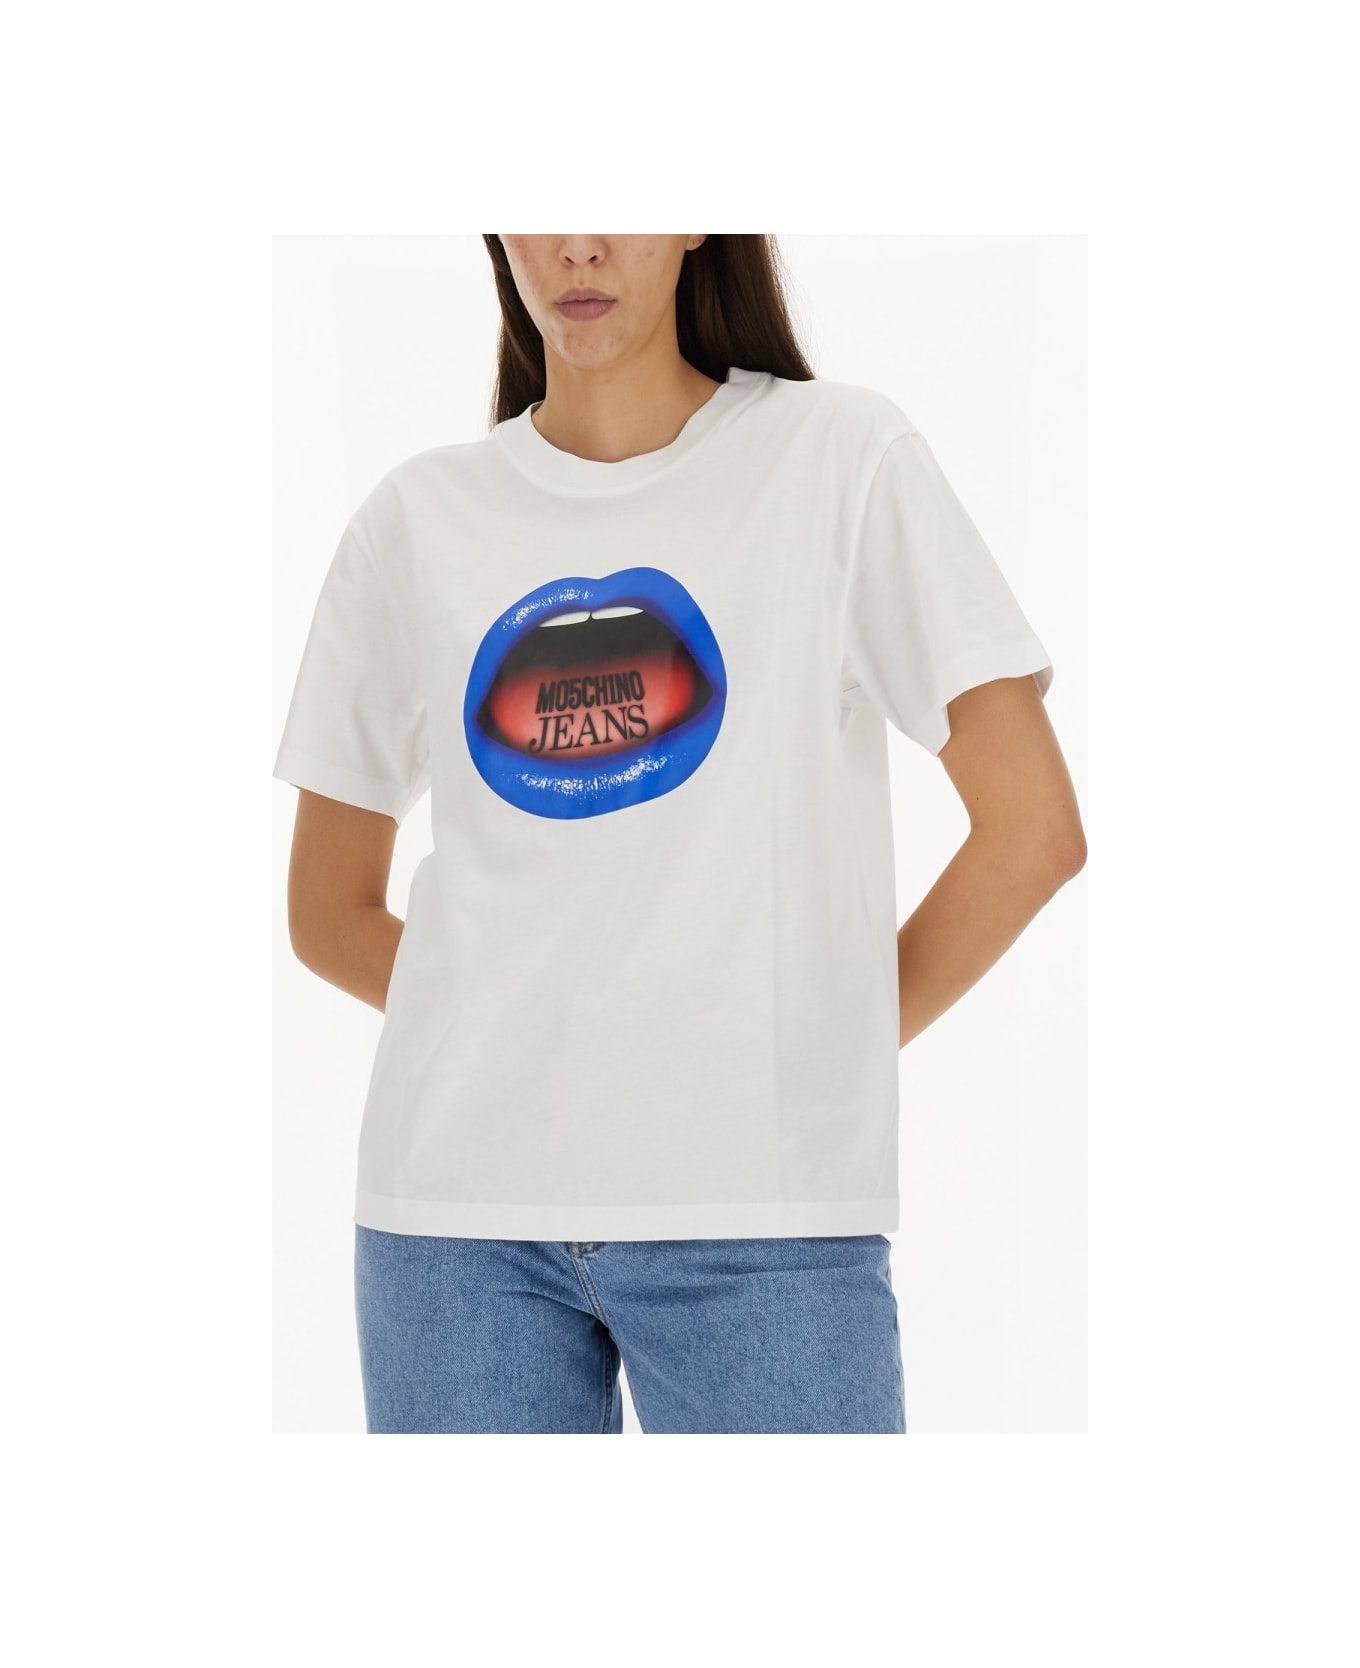 M05CH1N0 Jeans Mouth Print T-shirt - MULTICOLOUR